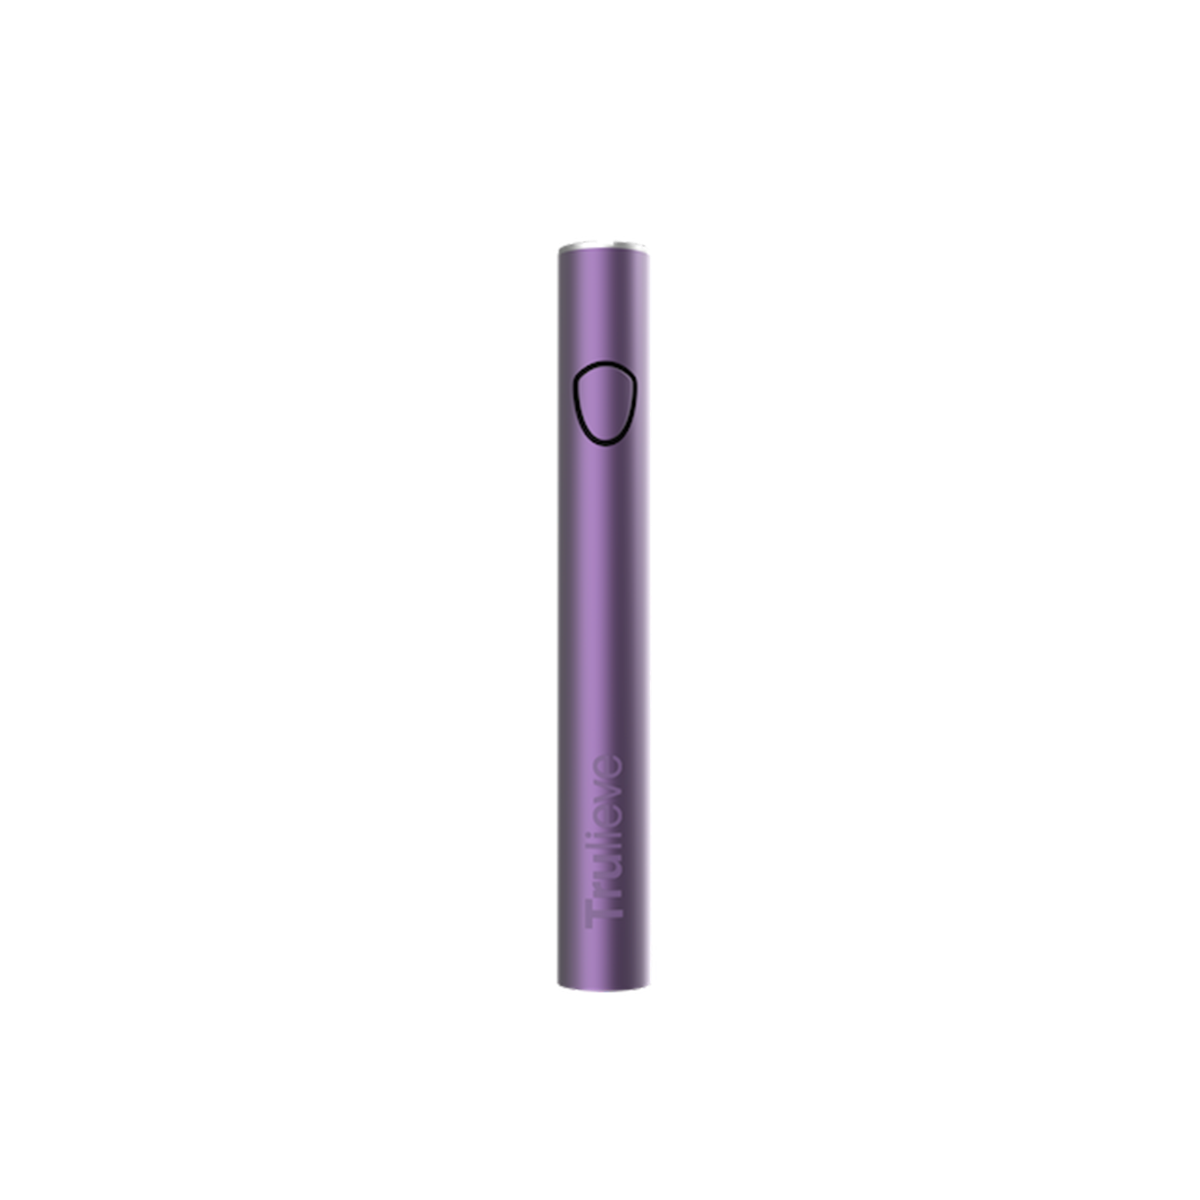 Frosted Purple - IK 510 Battery